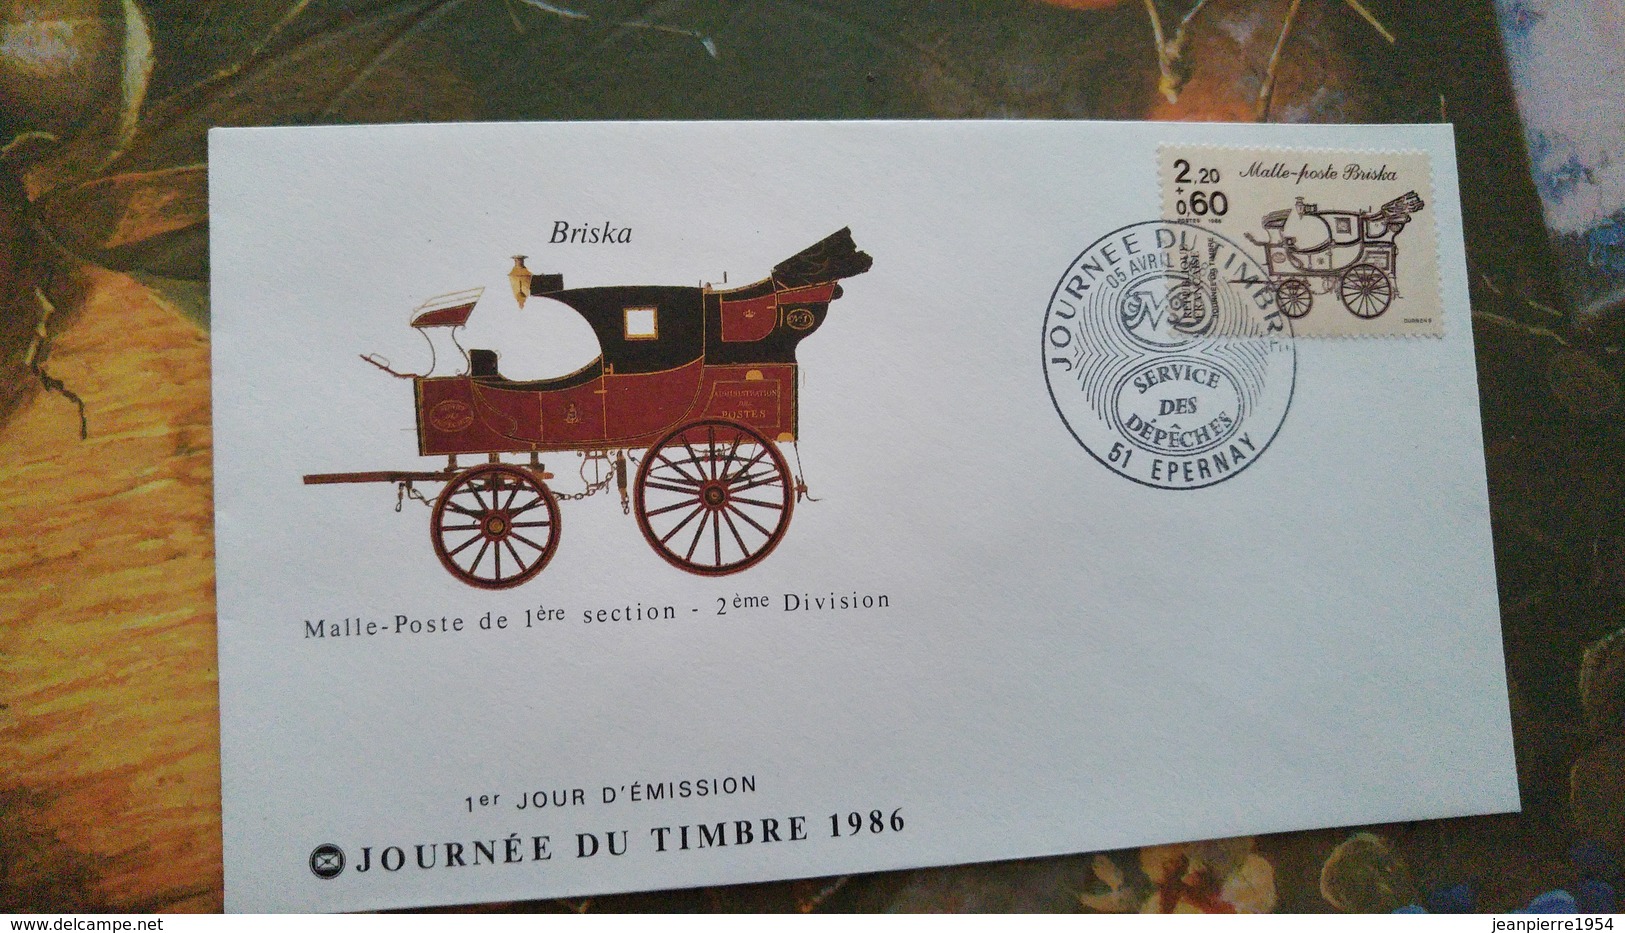 timbres francais